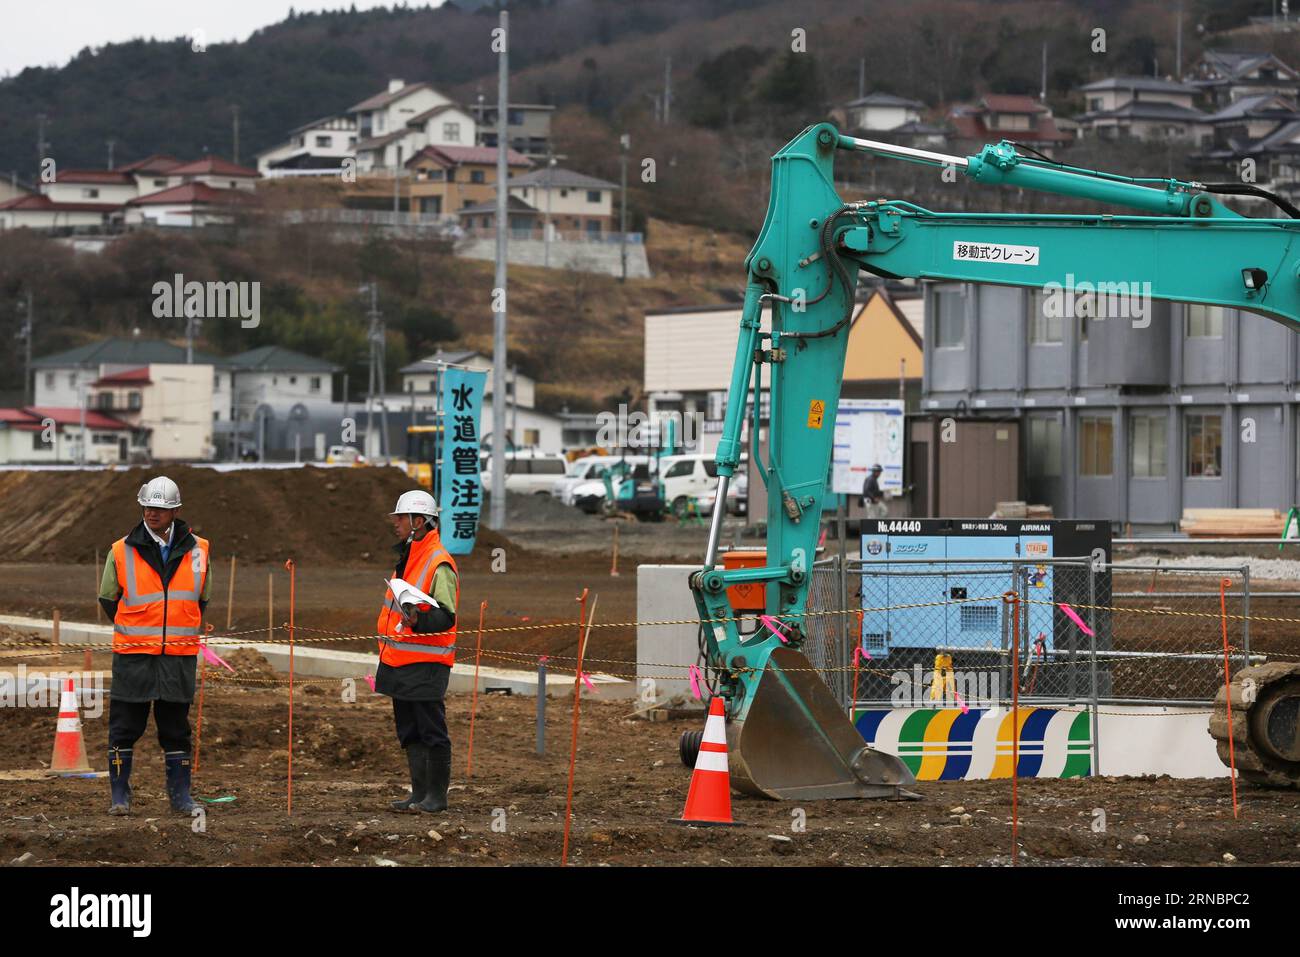 (160310) -- TOKIO, 10. März 2016 -- Foto vom 5. März 2016 zeigt einen Ort des Wiederaufbaus in Ofunato der Präfektur Iwate im Nordosten Japans. Die Evakuierten, nachdem das monströse Erdbeben und der Tsunami das japanische Tohoku-Gebiet getroffen hatten, oder nordöstlicher Teil des Insellandes, hätte nie gedacht, dass sie fünf Jahre nach der Katastrophe in provisorischen Unterkünften bleiben würden, um gegen Einsamkeit und Krankheiten zu kämpfen, da die von der Regierung finanzierten öffentlichen Wohnprojekte verzögert werden und unerträgliche Kosten für diejenigen ohne Arbeit bedeuten. ) JAPAN-IWATE-REKONSTRUKTION LiuxTian PUBLICATIONxNOTxINxCHN 160310 Tokio Stockfoto